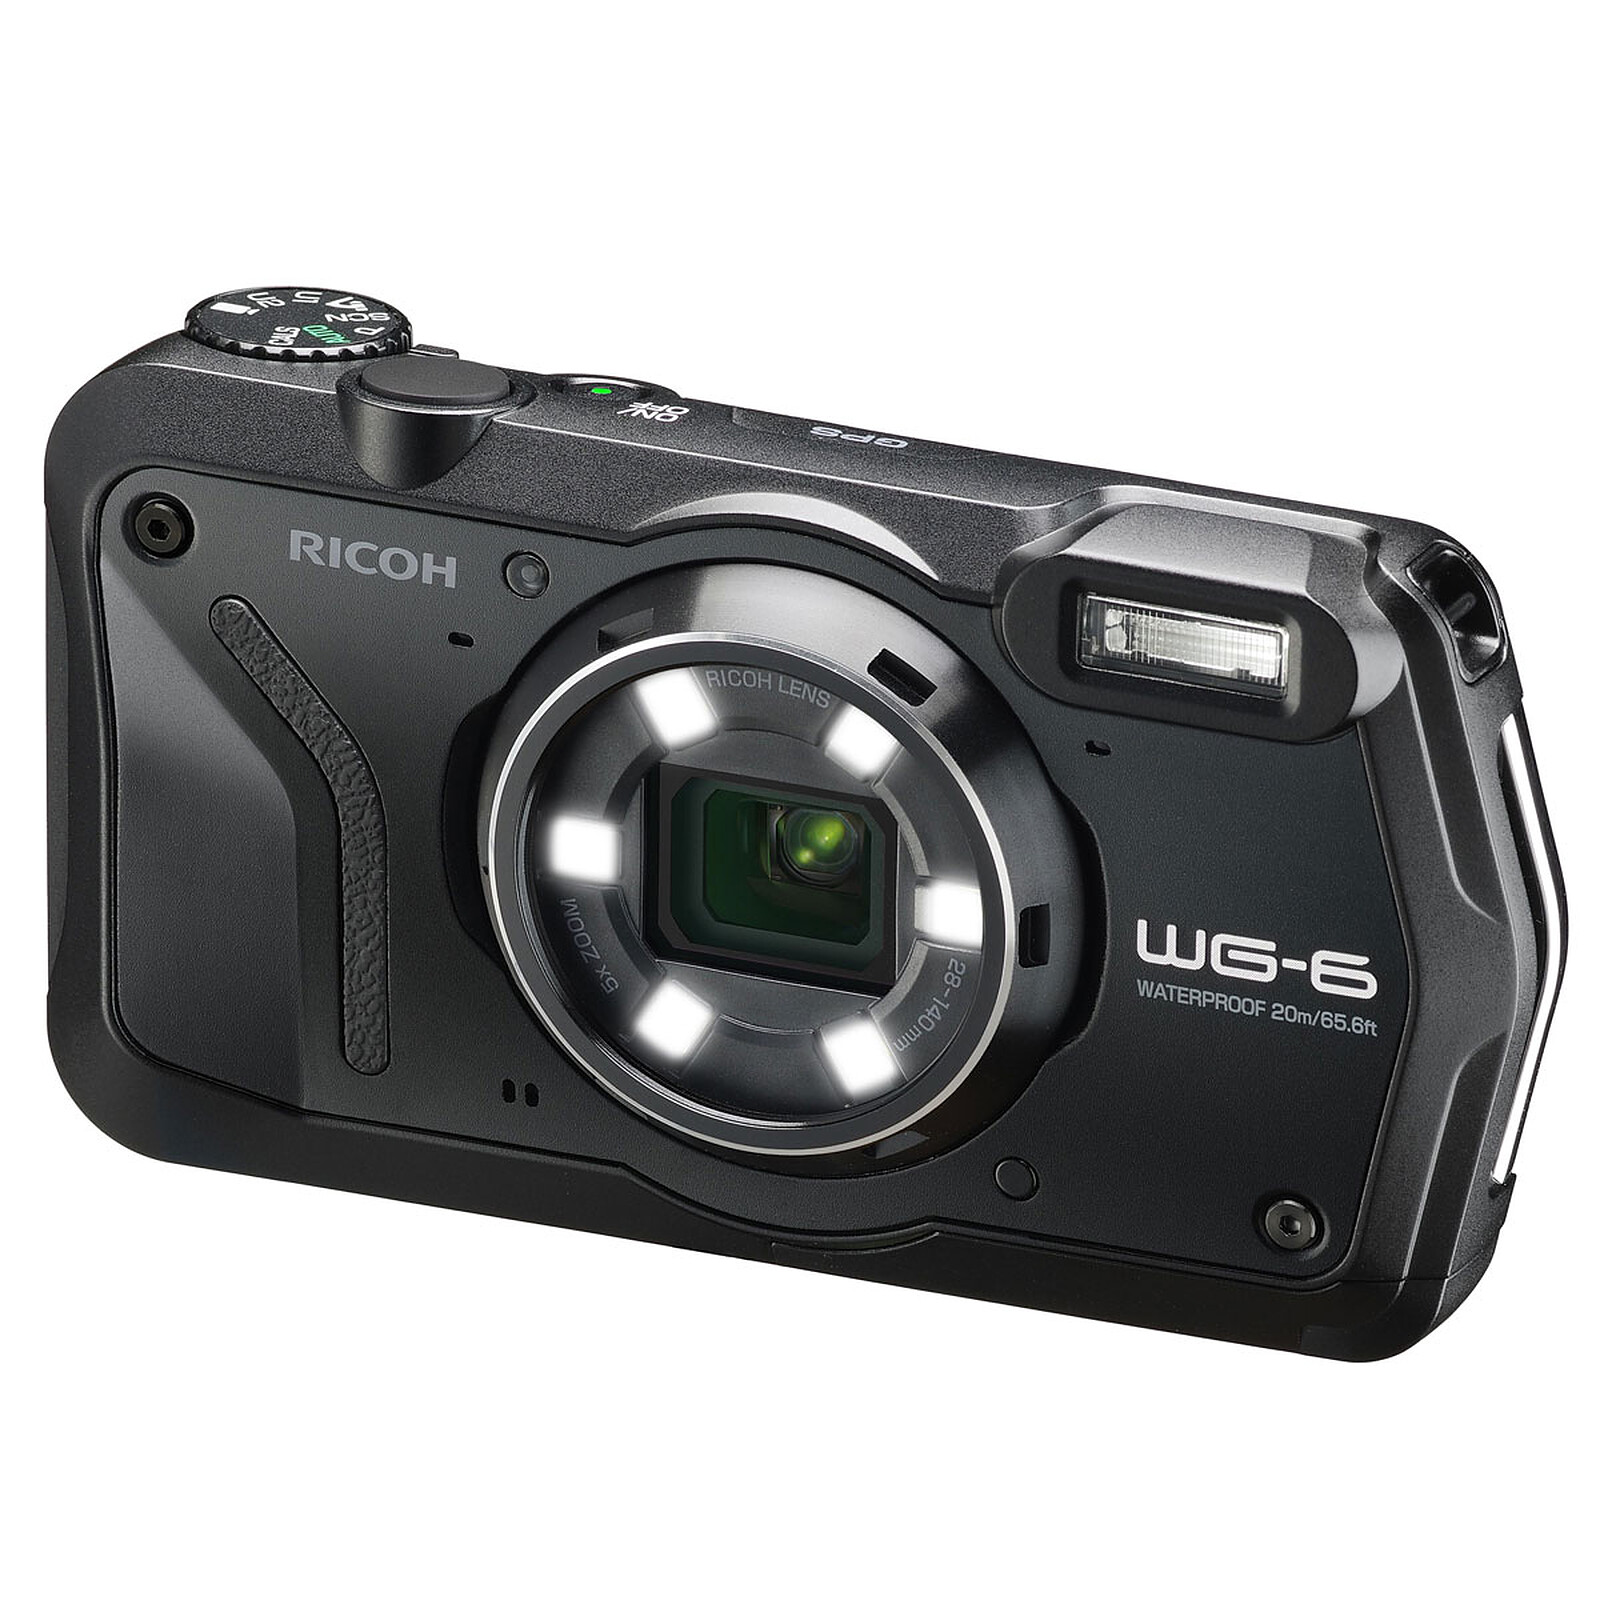 Cavo DATI USB per fotocamera digitale Ricoh WG-4 GPS foto per PC/MAC 